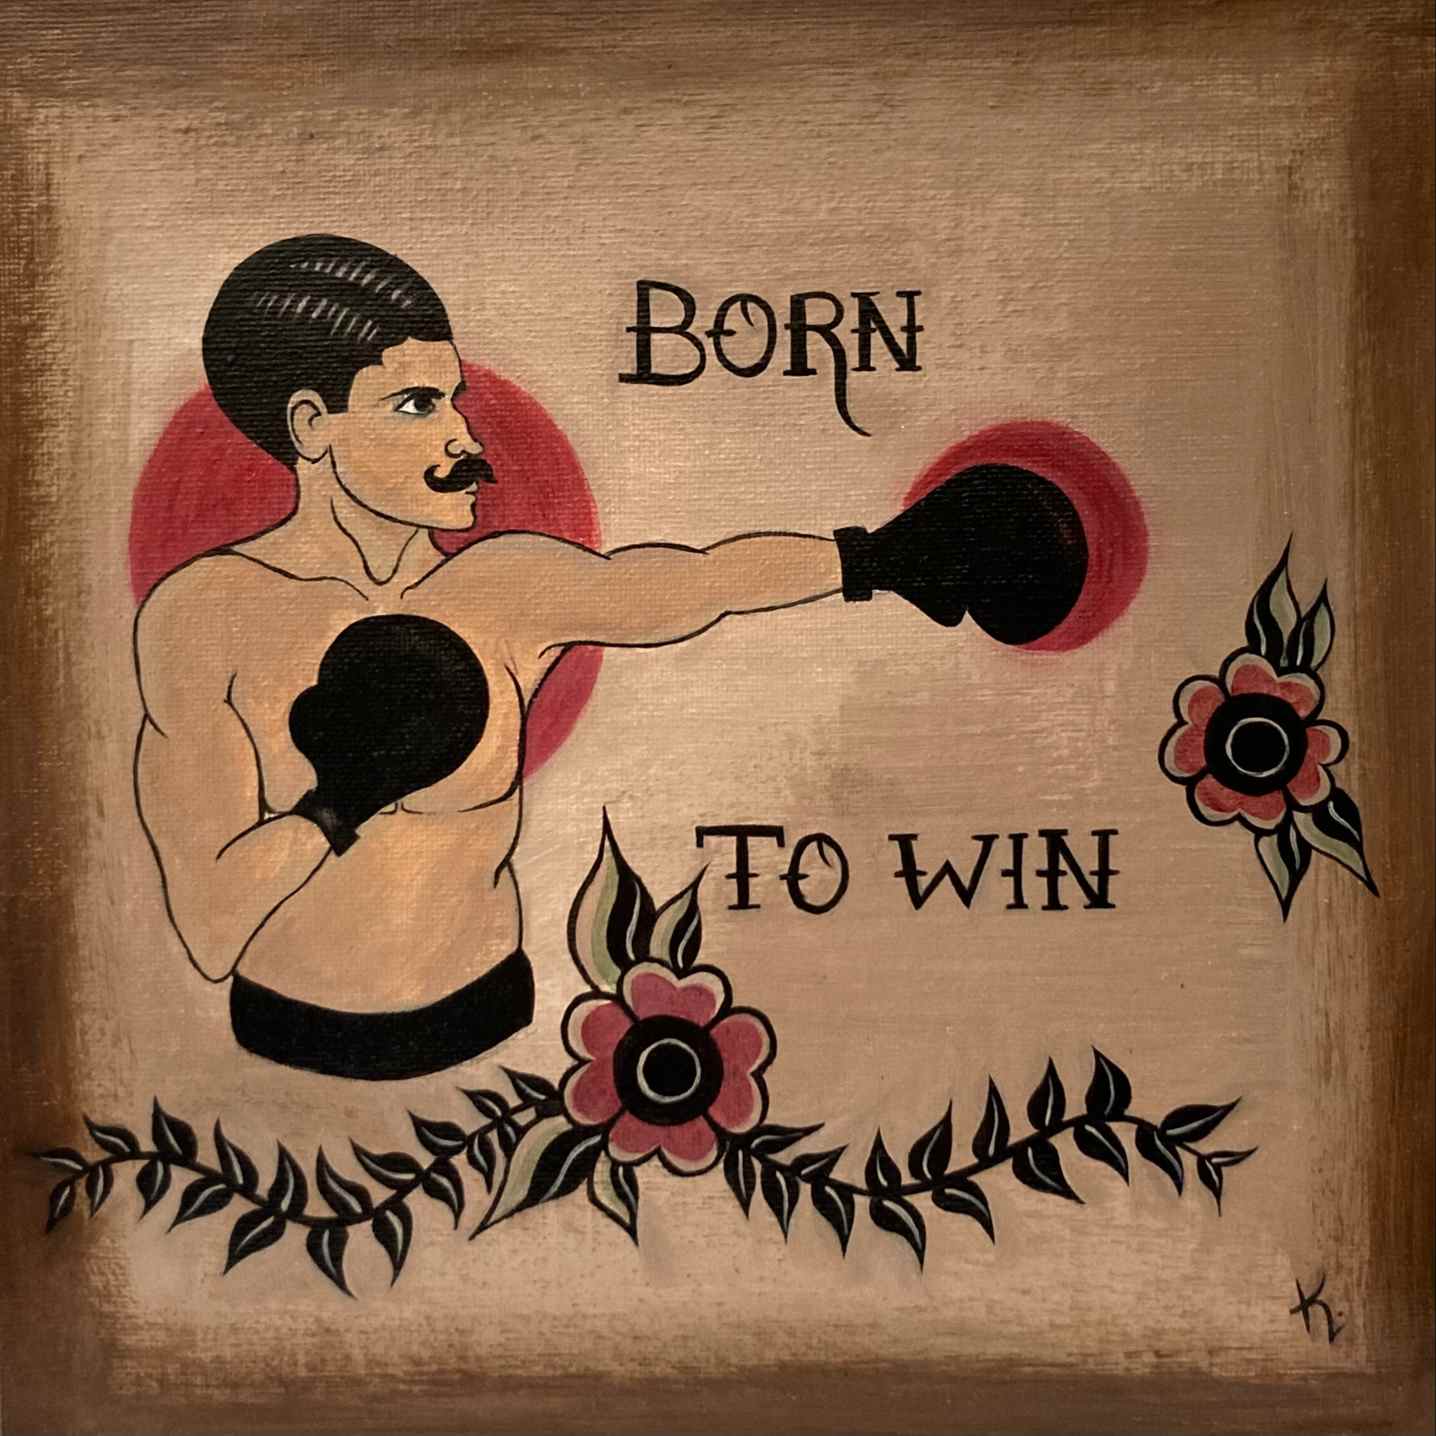 BORN TO WIN